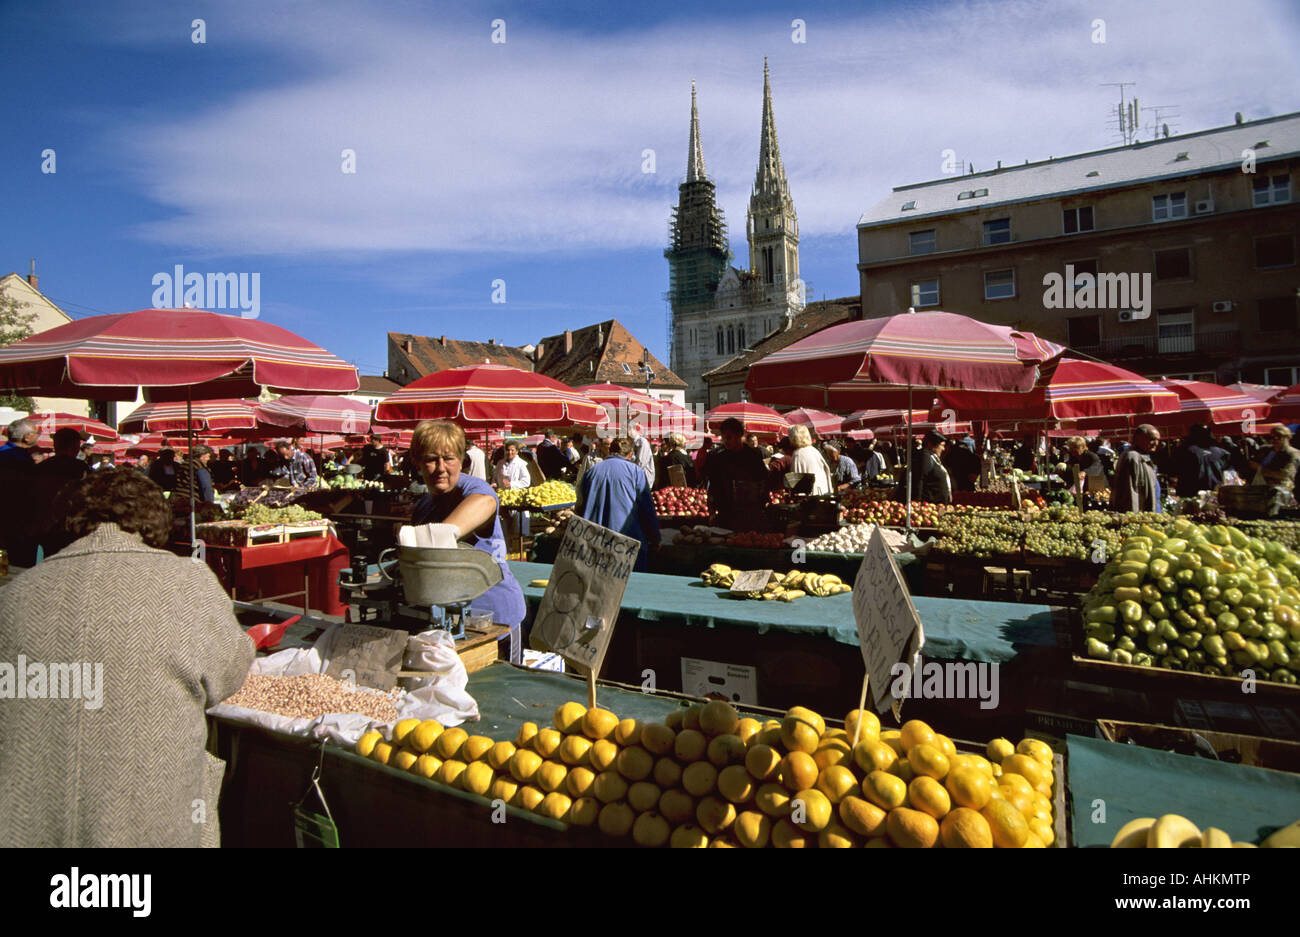 Hrv Kroatien Zagreb Farbenfrohe Pracht Markt In Zagreb Croatia Colorful Splendor Market In Zagreb Stock Photo Alamy